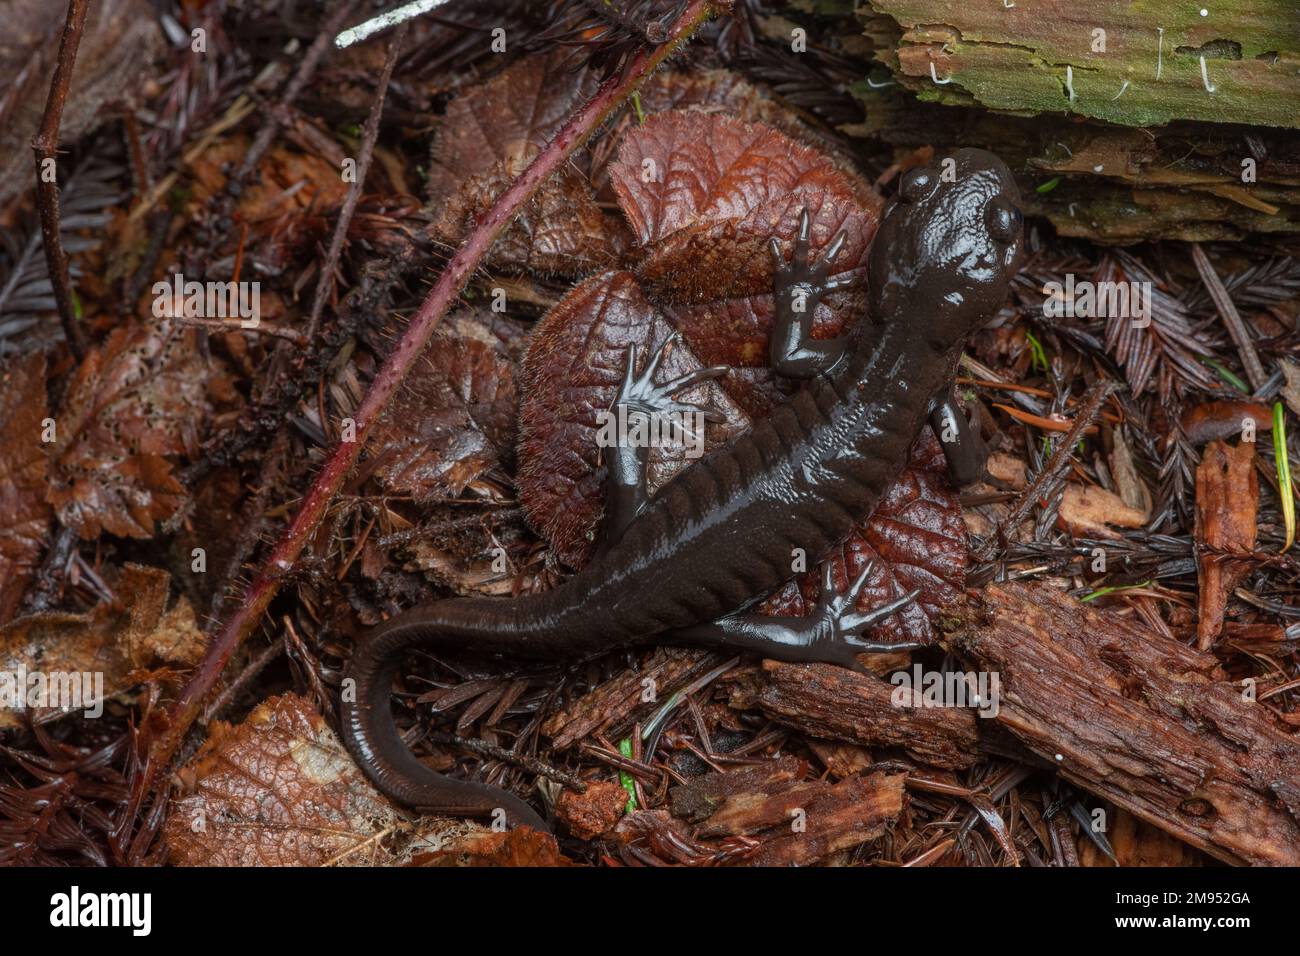 Una salamandra nordoccidentale (Ambystoma gracile), un membro della famiglia delle salamandre mole sul pavimento della foresta nella contea di Mendocino, California, USA. Foto Stock